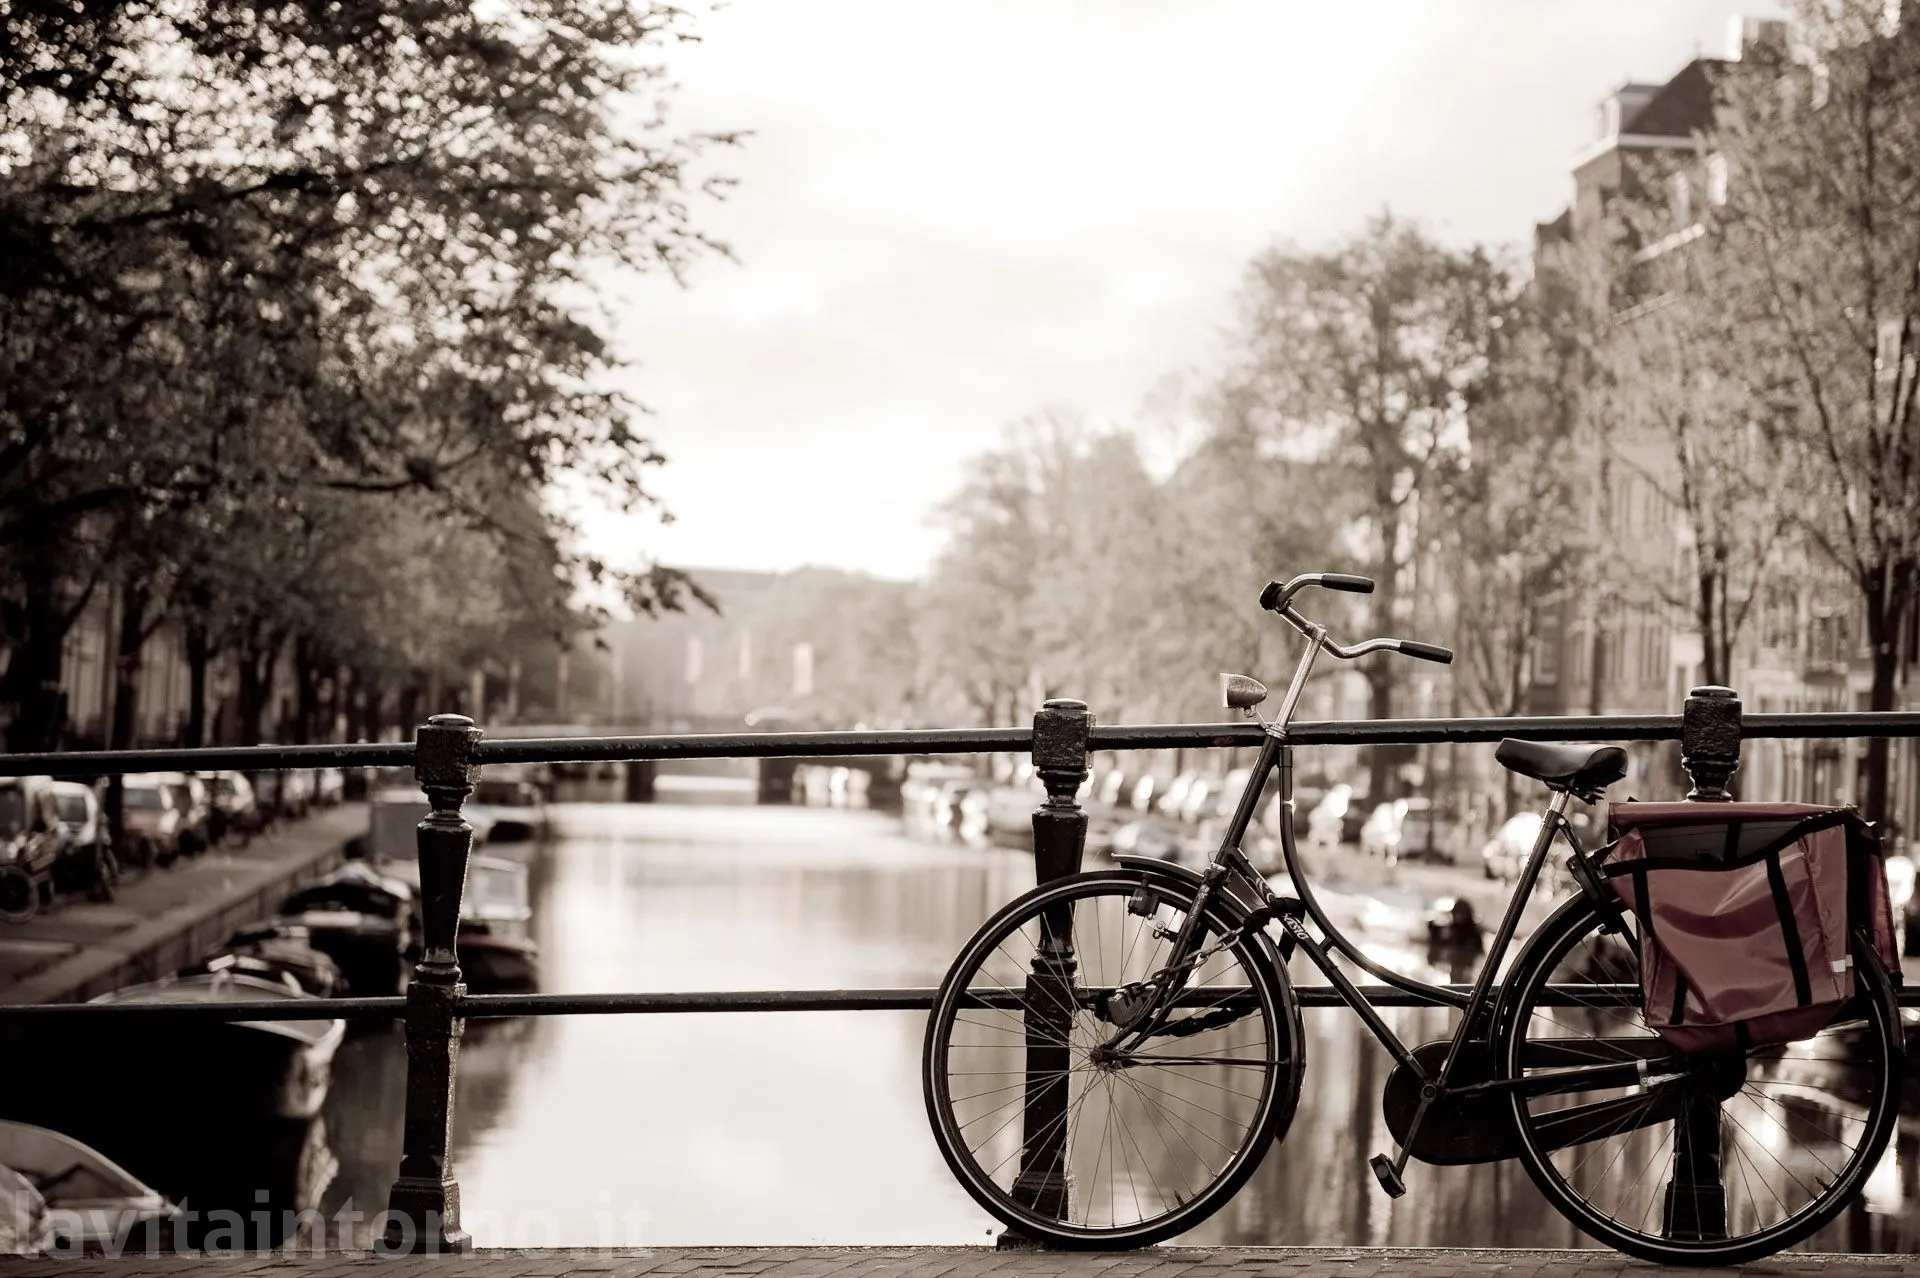 Amsterdam: bike on the bridge #3
D700
Nikkor 24-70 F/2.8G AF-S